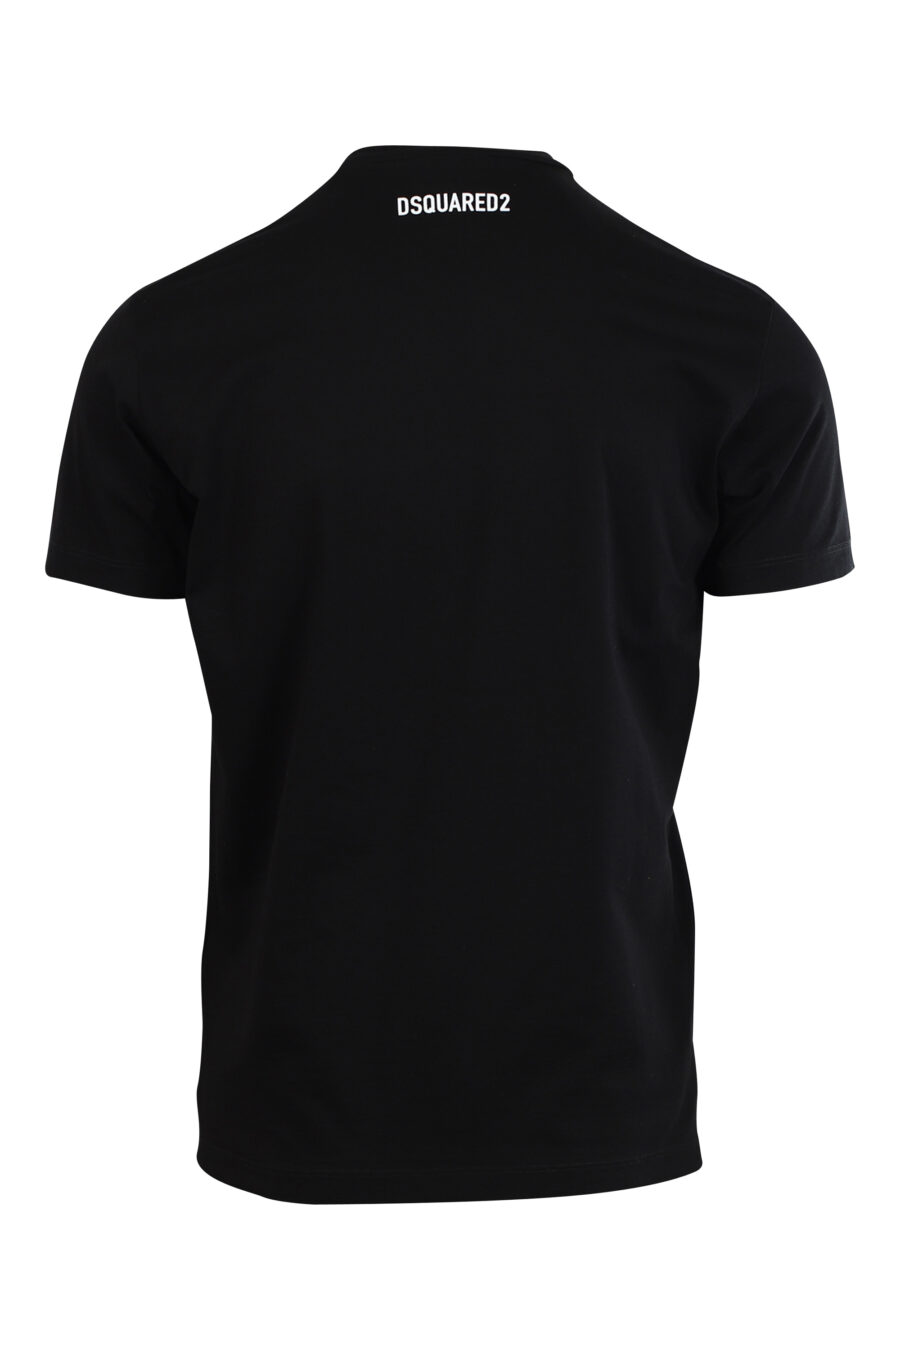 T-shirt preta com maxilogo de cão "Pixeled" - 8052134980774 2